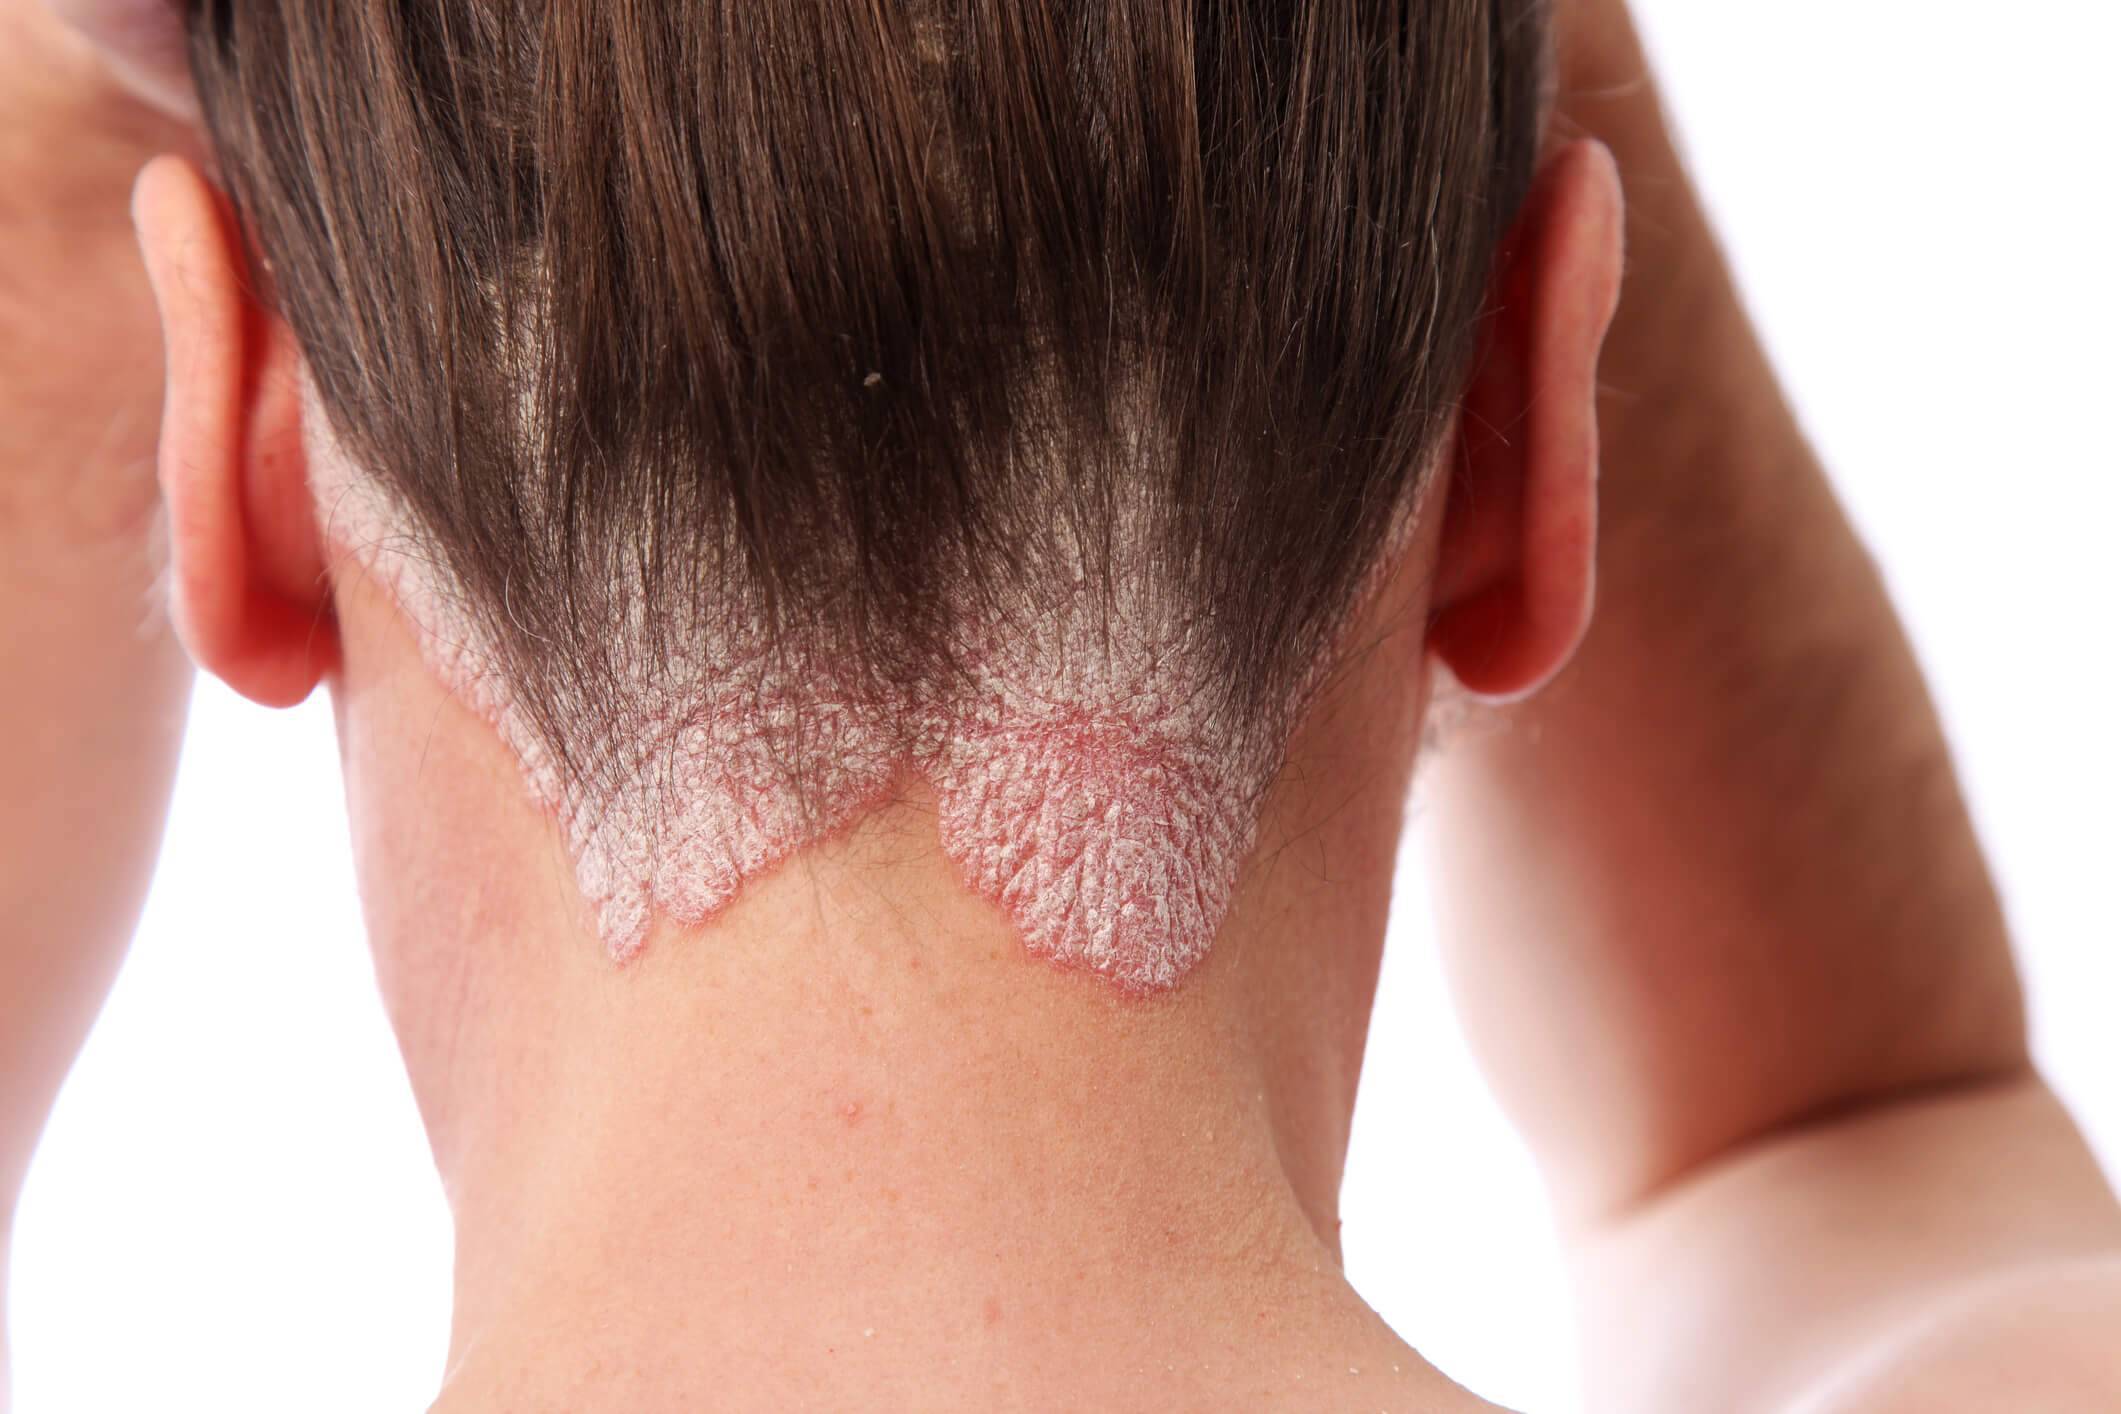 Как лечить псориаз на голове, фото начальной стадии волосистой части, симптомы и лечение в домашних условиях